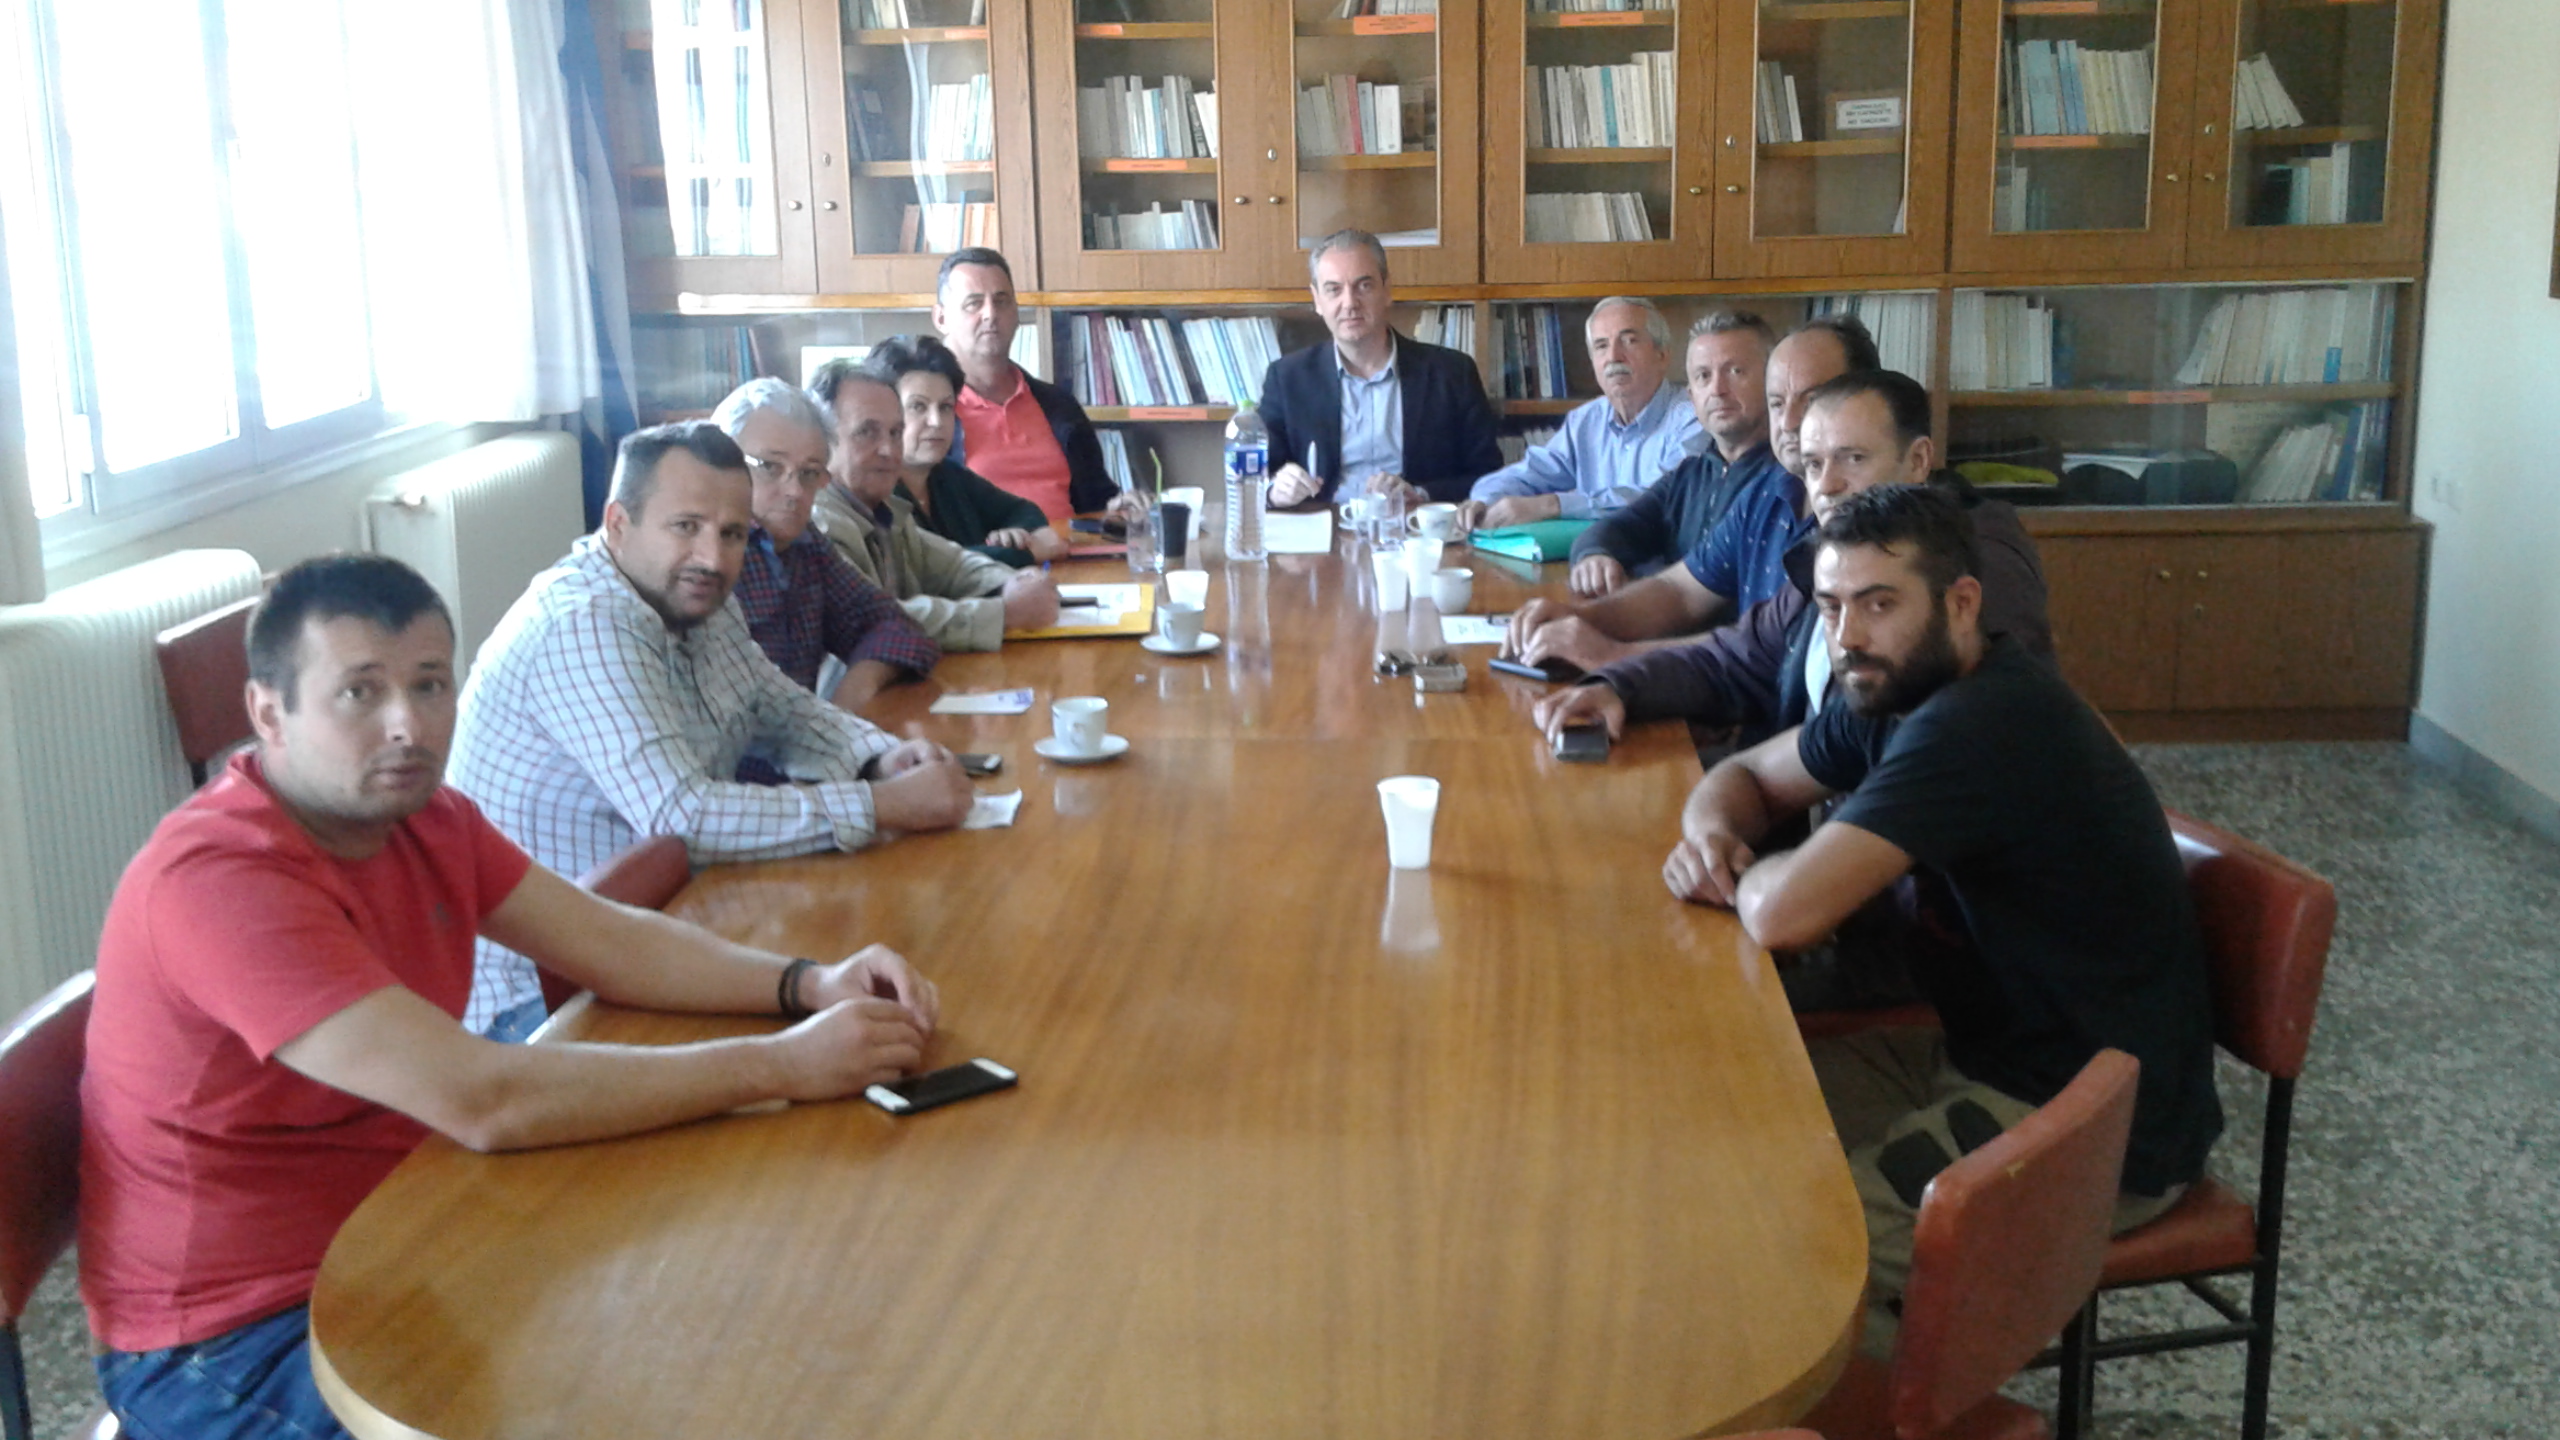 Δήμος Ελασσόνας: "Συνάντηση εργασίας με στόχο την αποκέντρωση των δομών"